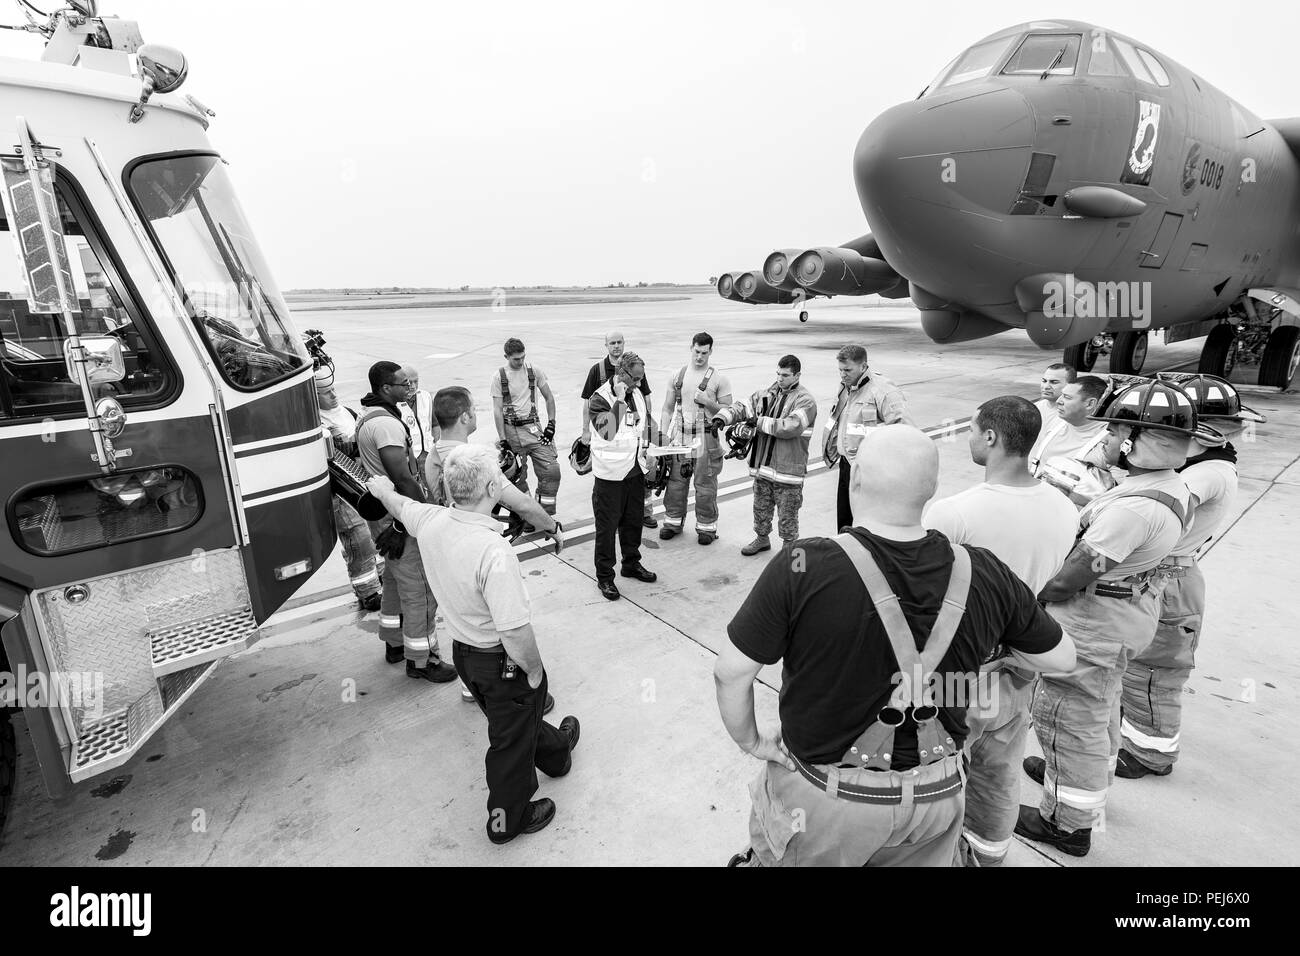 Charles Shipley, Inspecteur général Inspecteur de Base aérienne de Barksdale, réunit le personnel du 5e Escadron de génie civil sur la piste entre un camion et un B-52H Stratofortress pour discuter de leur entraînement physique à Minot Air Force Base, N.D., le 28 août 2015. L'exercice a duré environ une heure et vérifié la capacité de 15 membres de la 5e ces pompiers pour travailler en équipe. (U.S. Air Force photo/ Navigant de première classe J. T. Armstrong) Banque D'Images